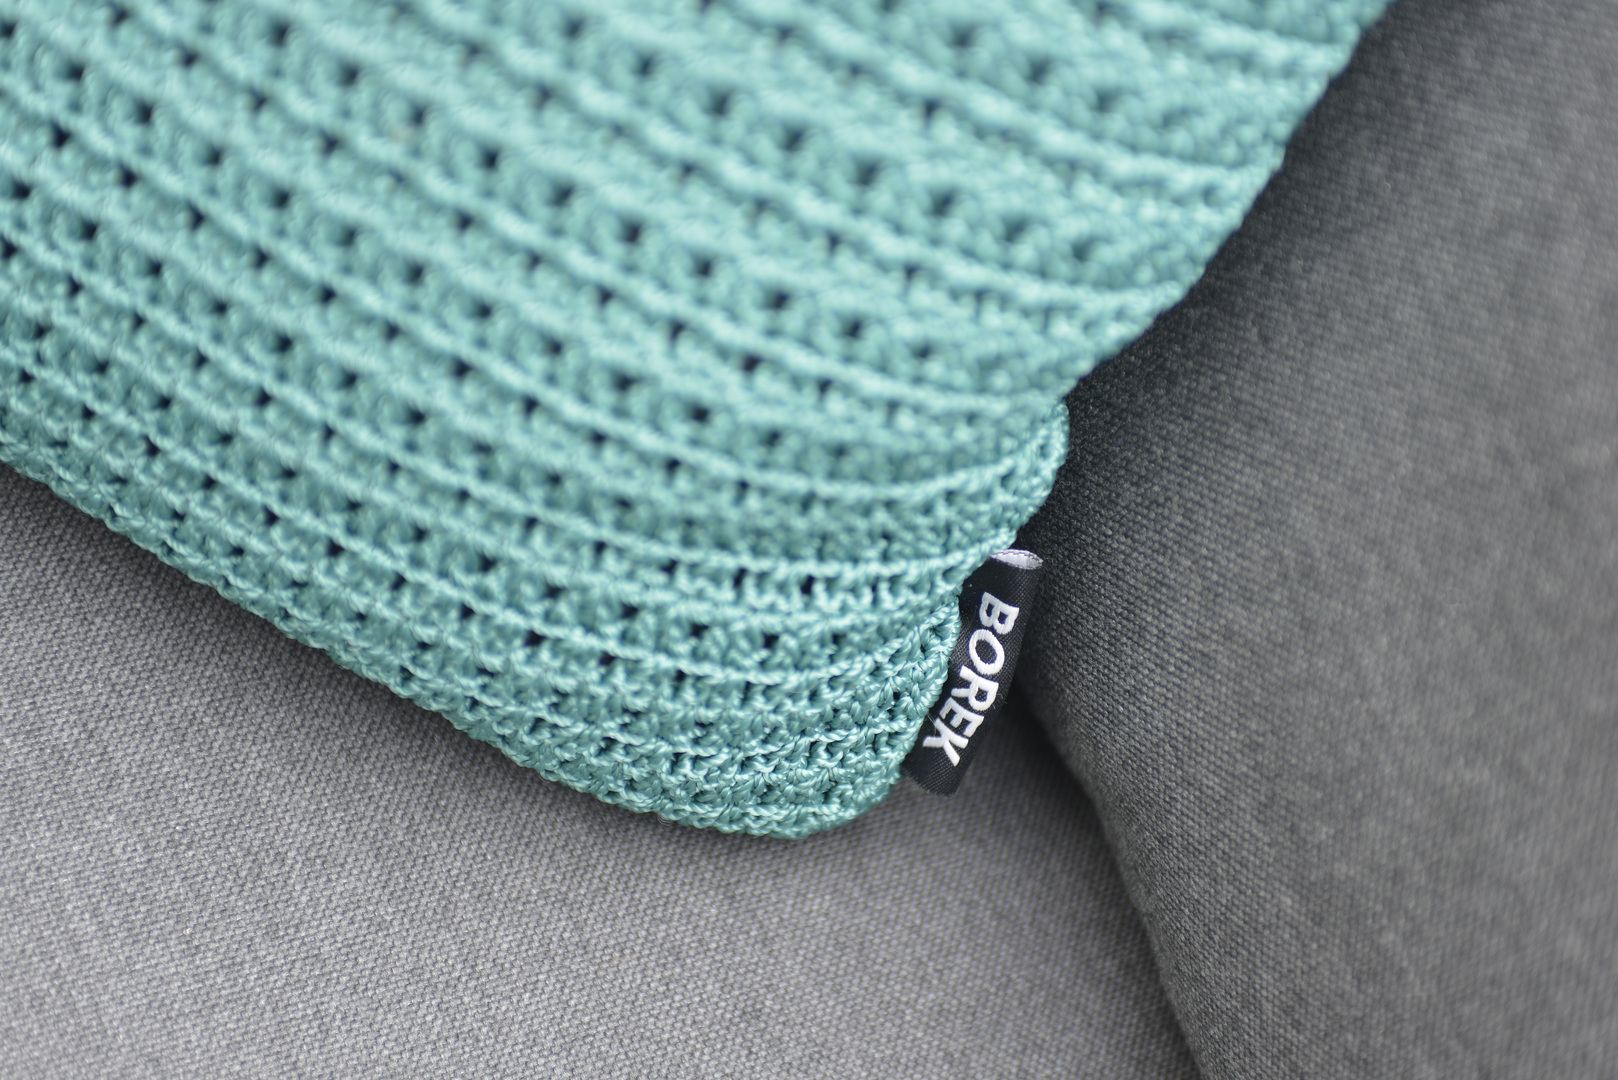 2018 Borek rope crochette decorative cushion detail.jpg